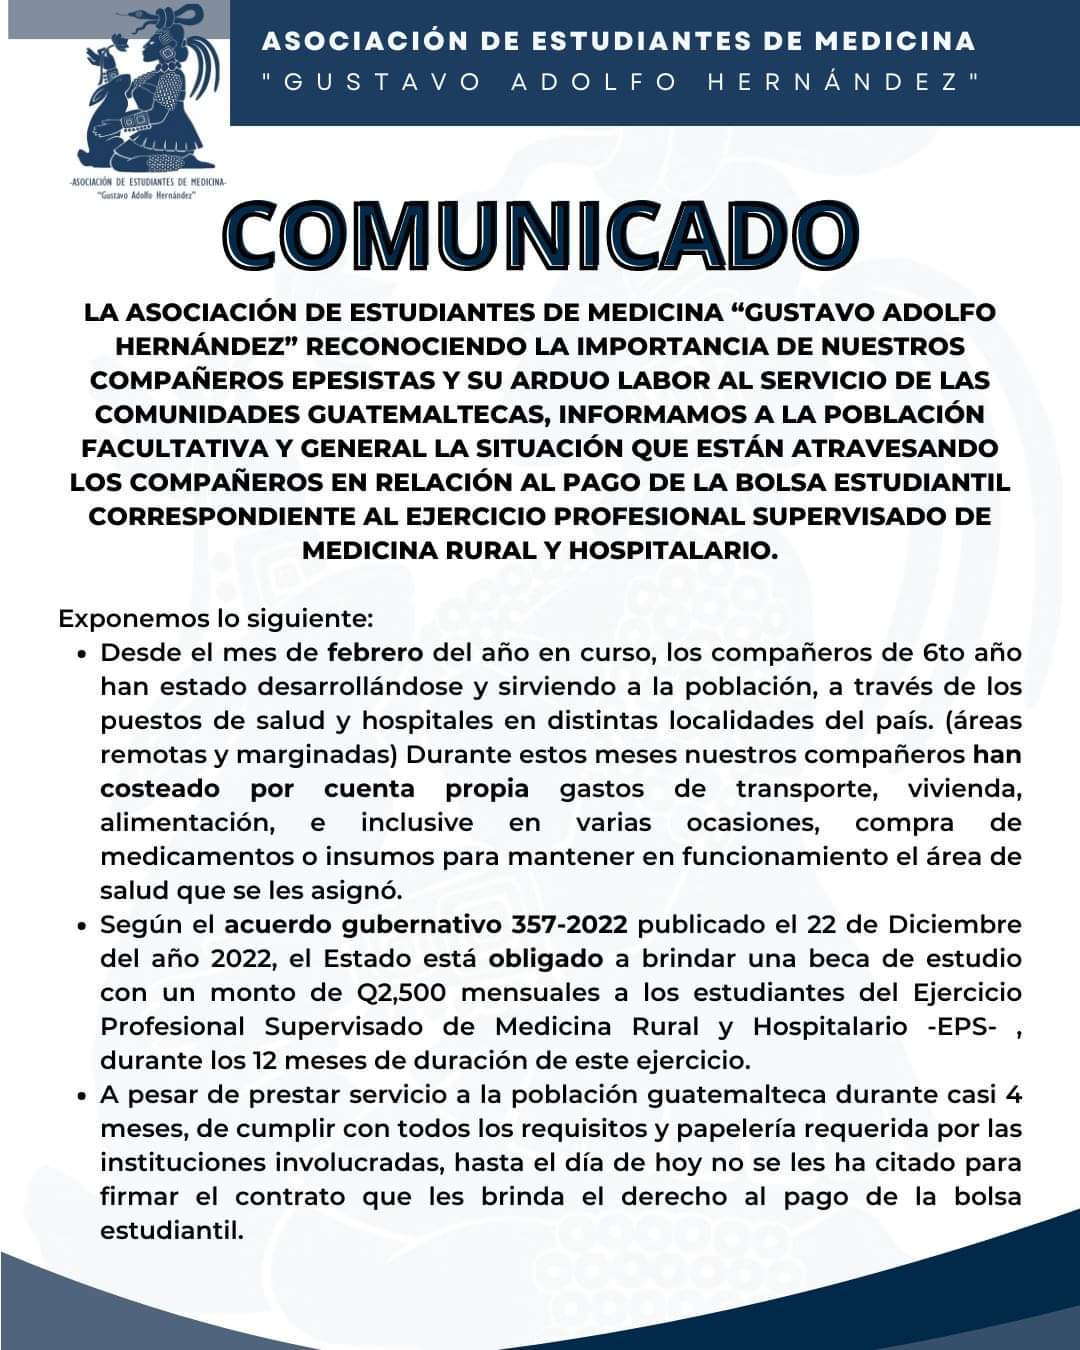 Comunicado de la Asociación de Estudiantes de Medicina "Gustavo Adolfo Hernández" 